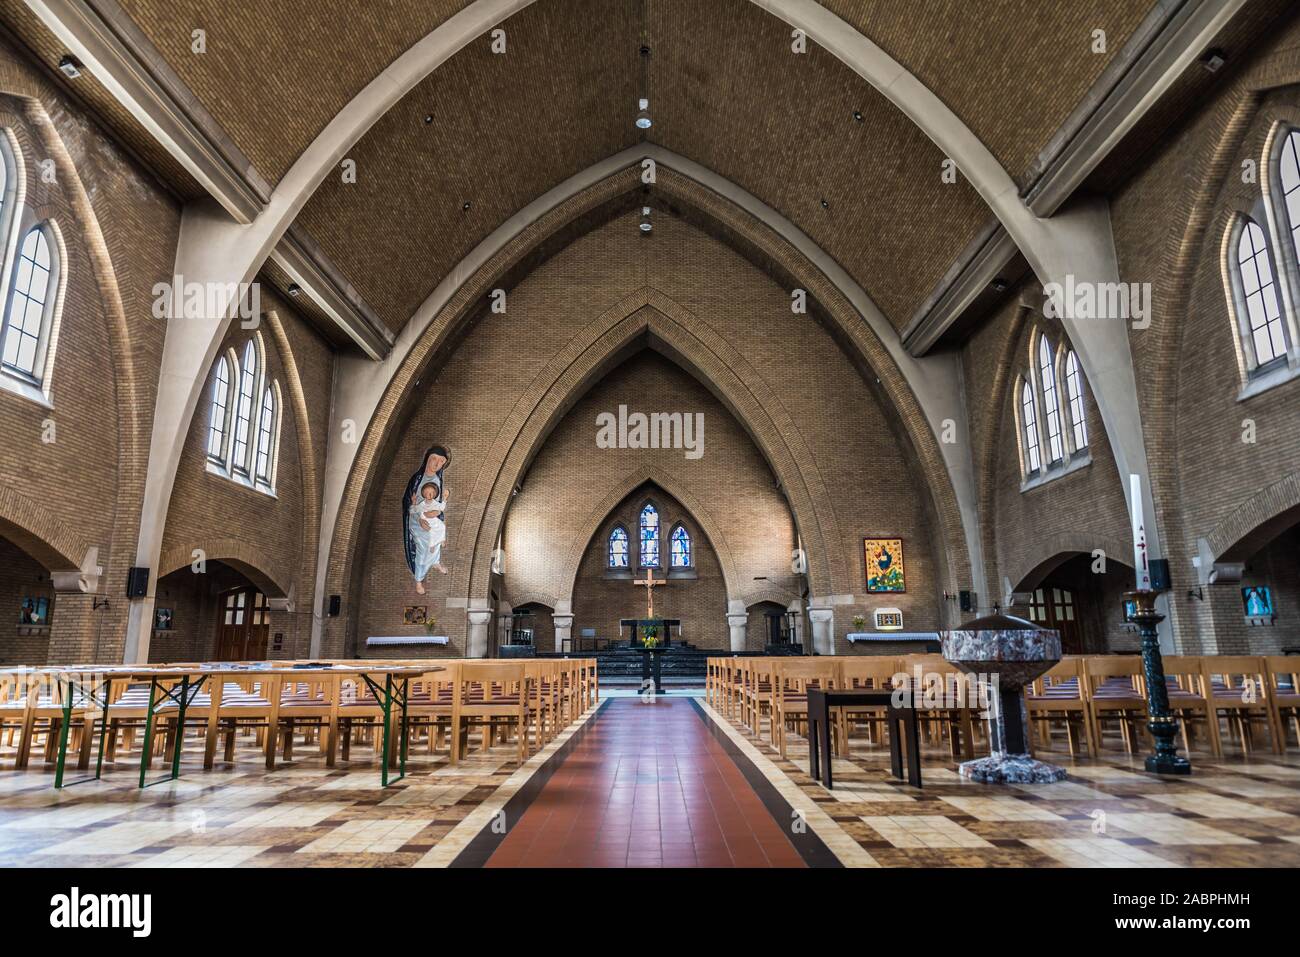 Bruxelles/ Belgique - 07 03 2019 - intérieur de l'église catholique du Sacré-cœur avec l'architecture symétrique moderne Banque D'Images